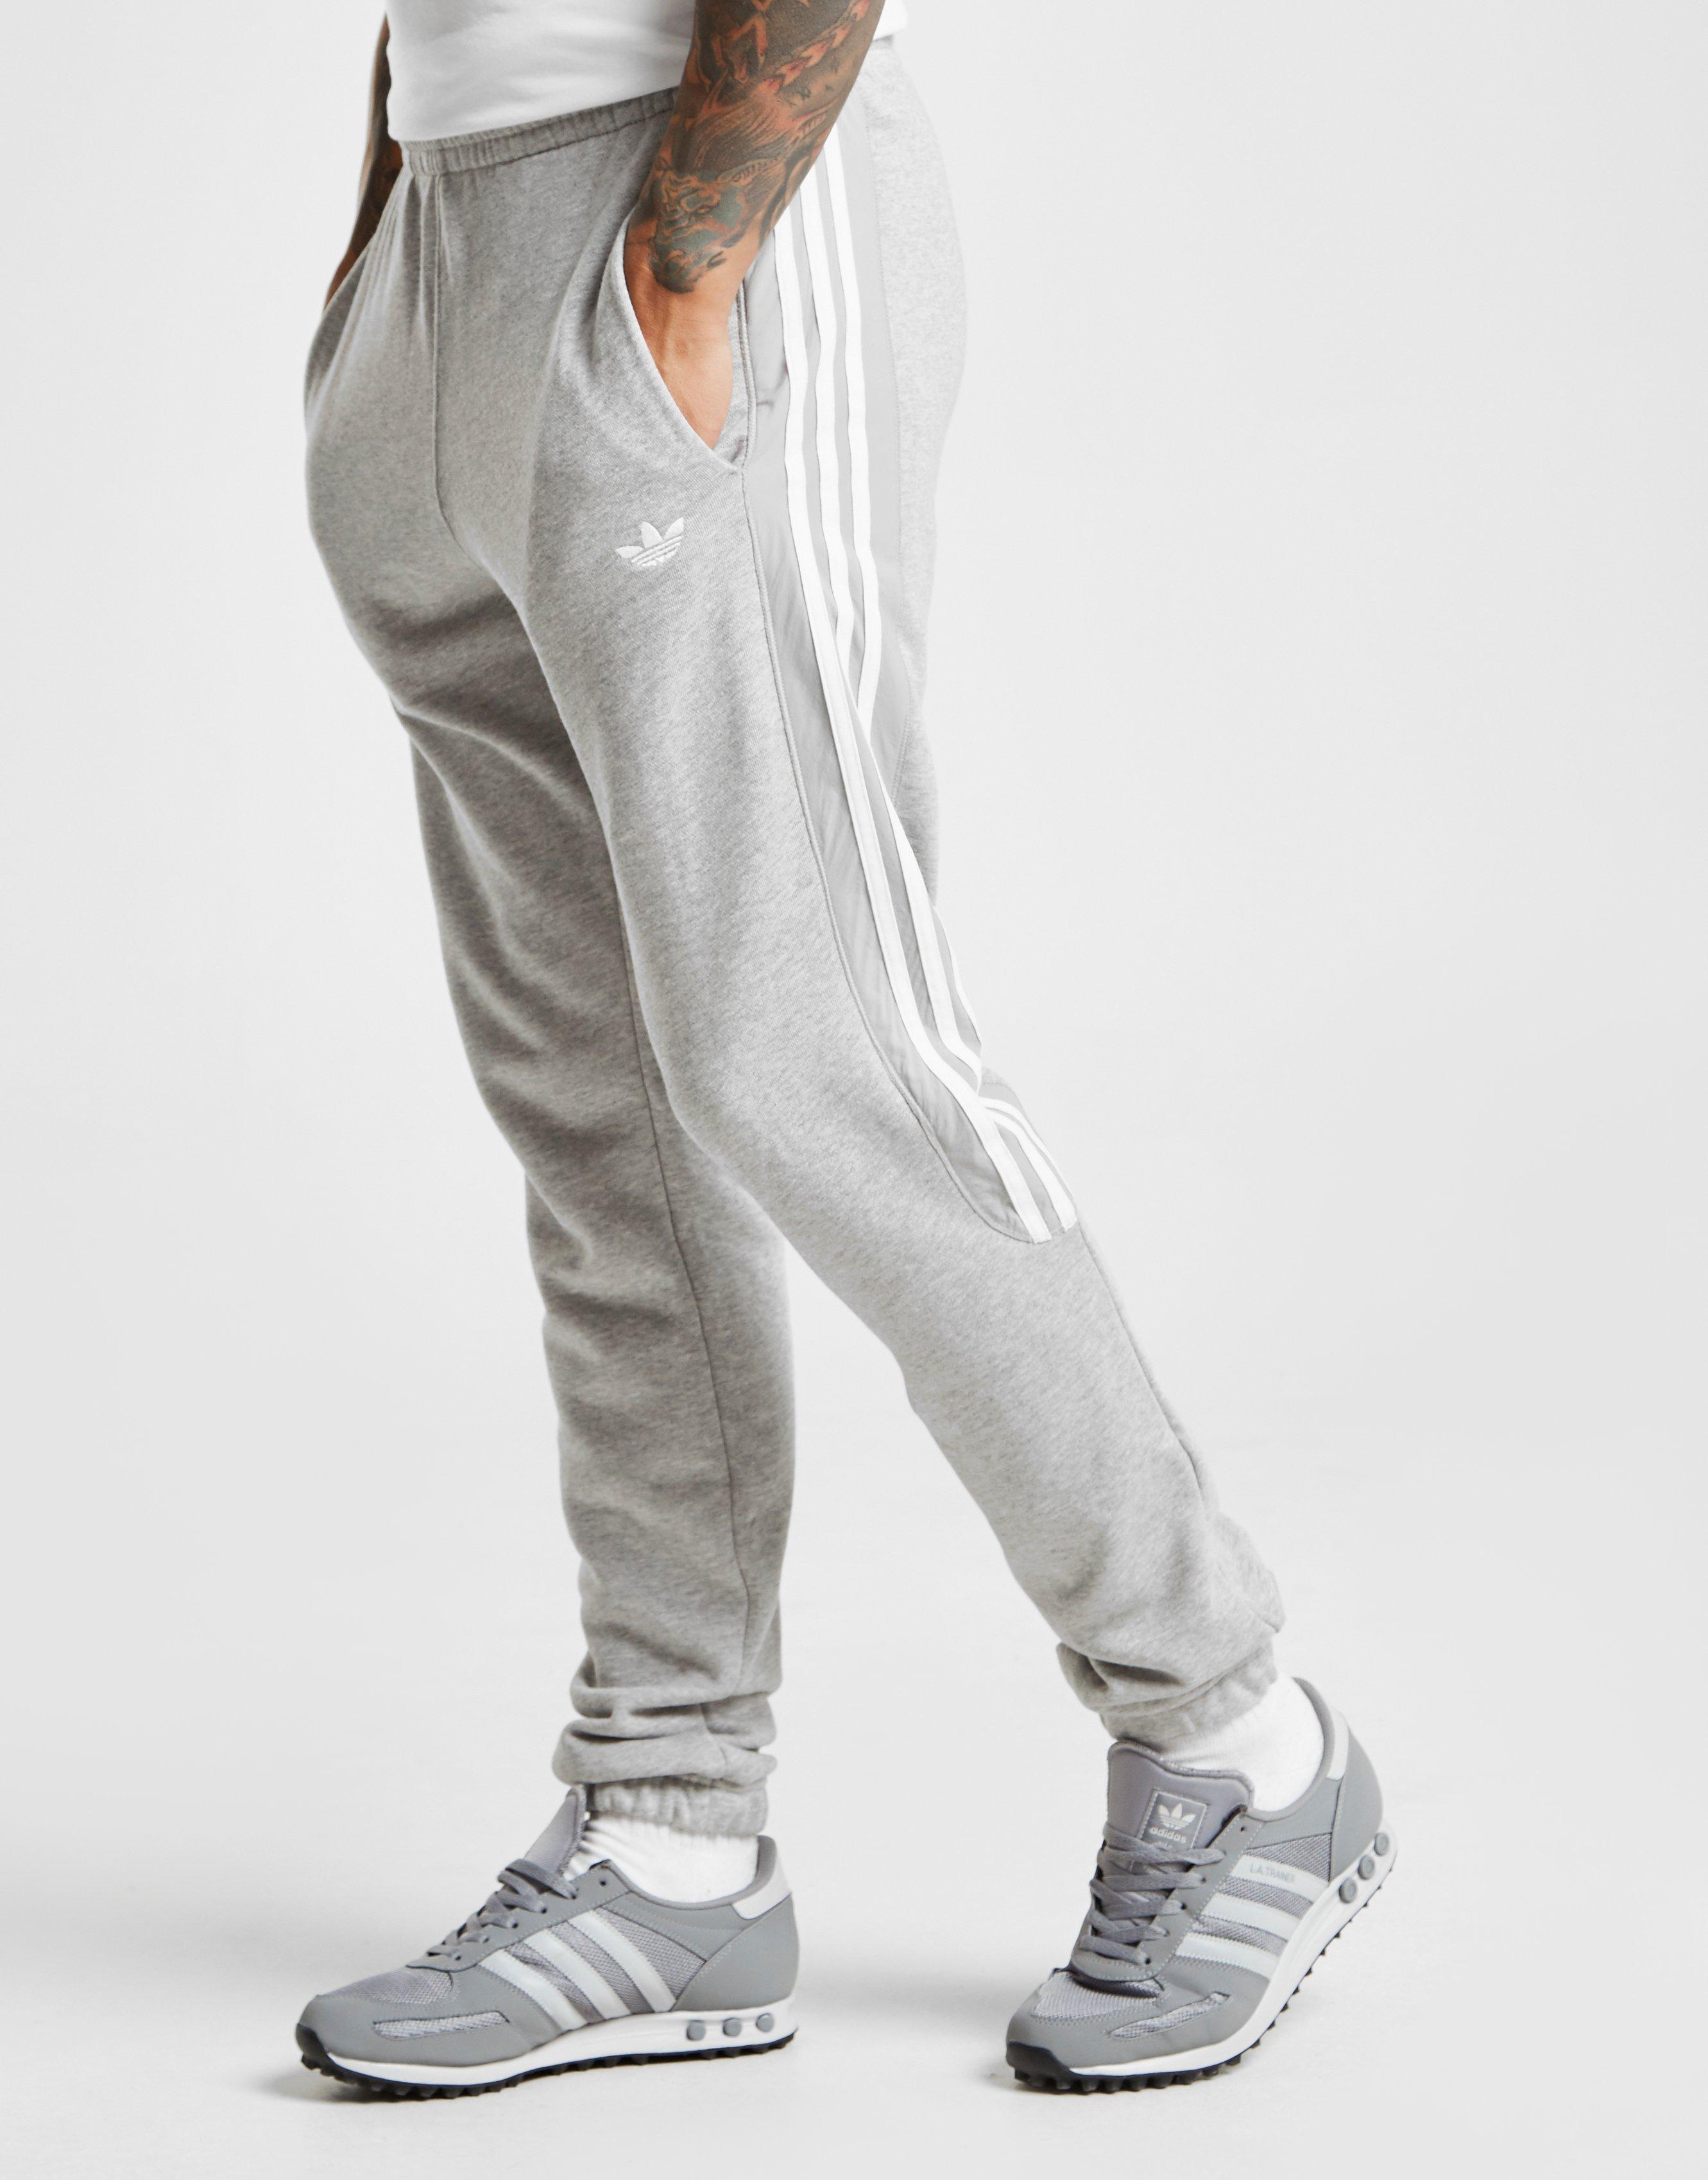 mens adidas joggers grey